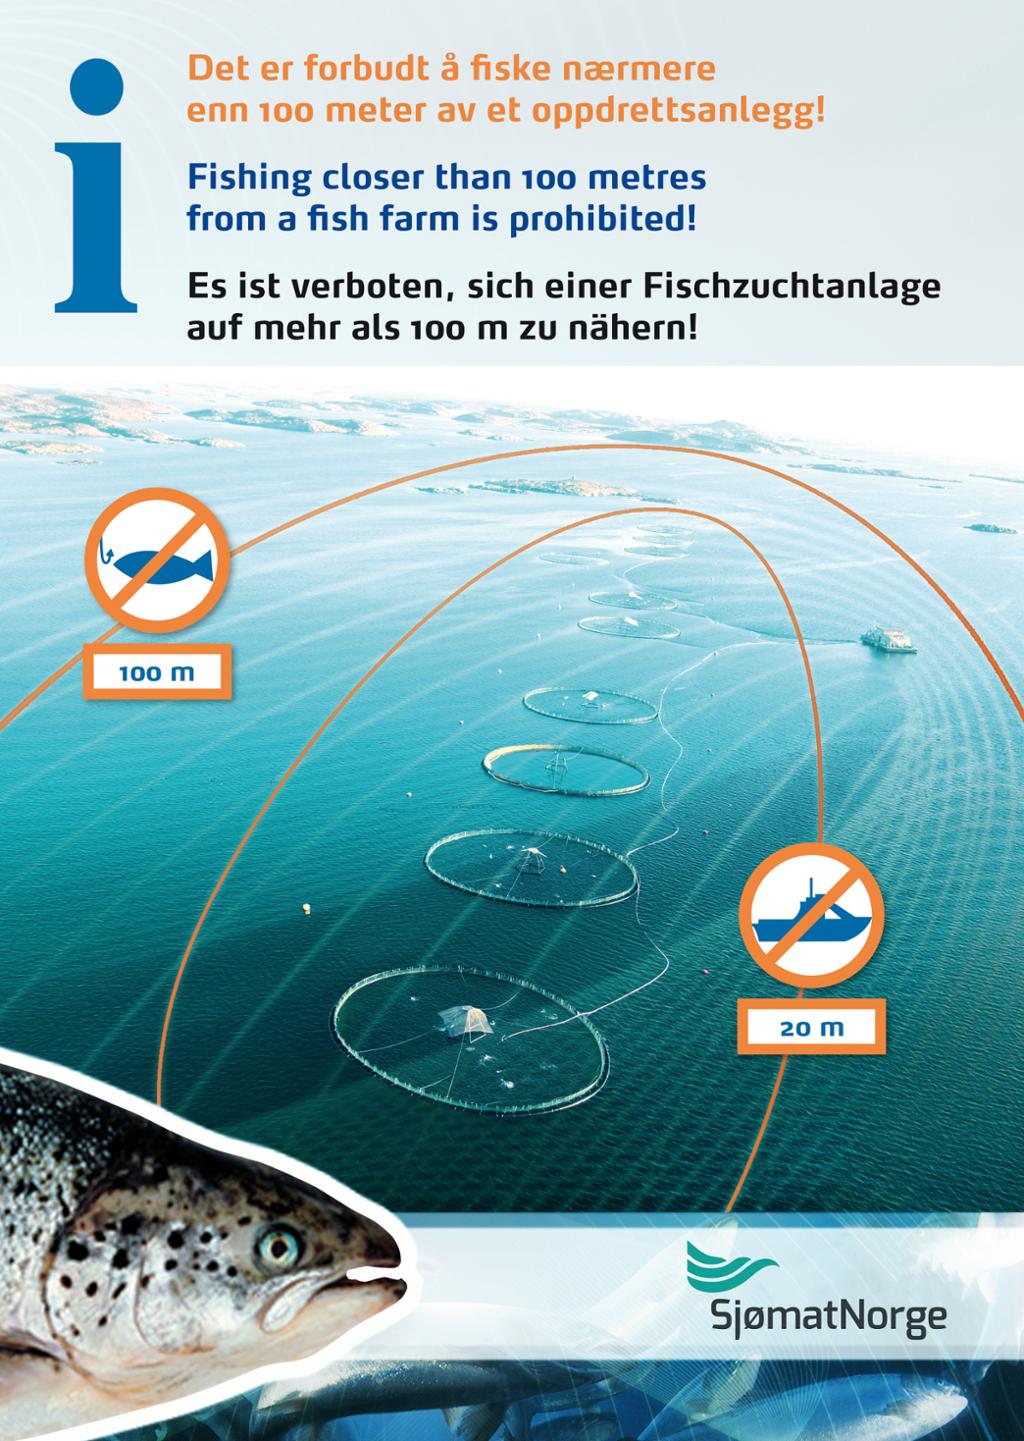 Plakat om ferdselsforbod ved oppdrettsanlegg med tekst på norsk, engelsk og tysk. Illustrasjon.